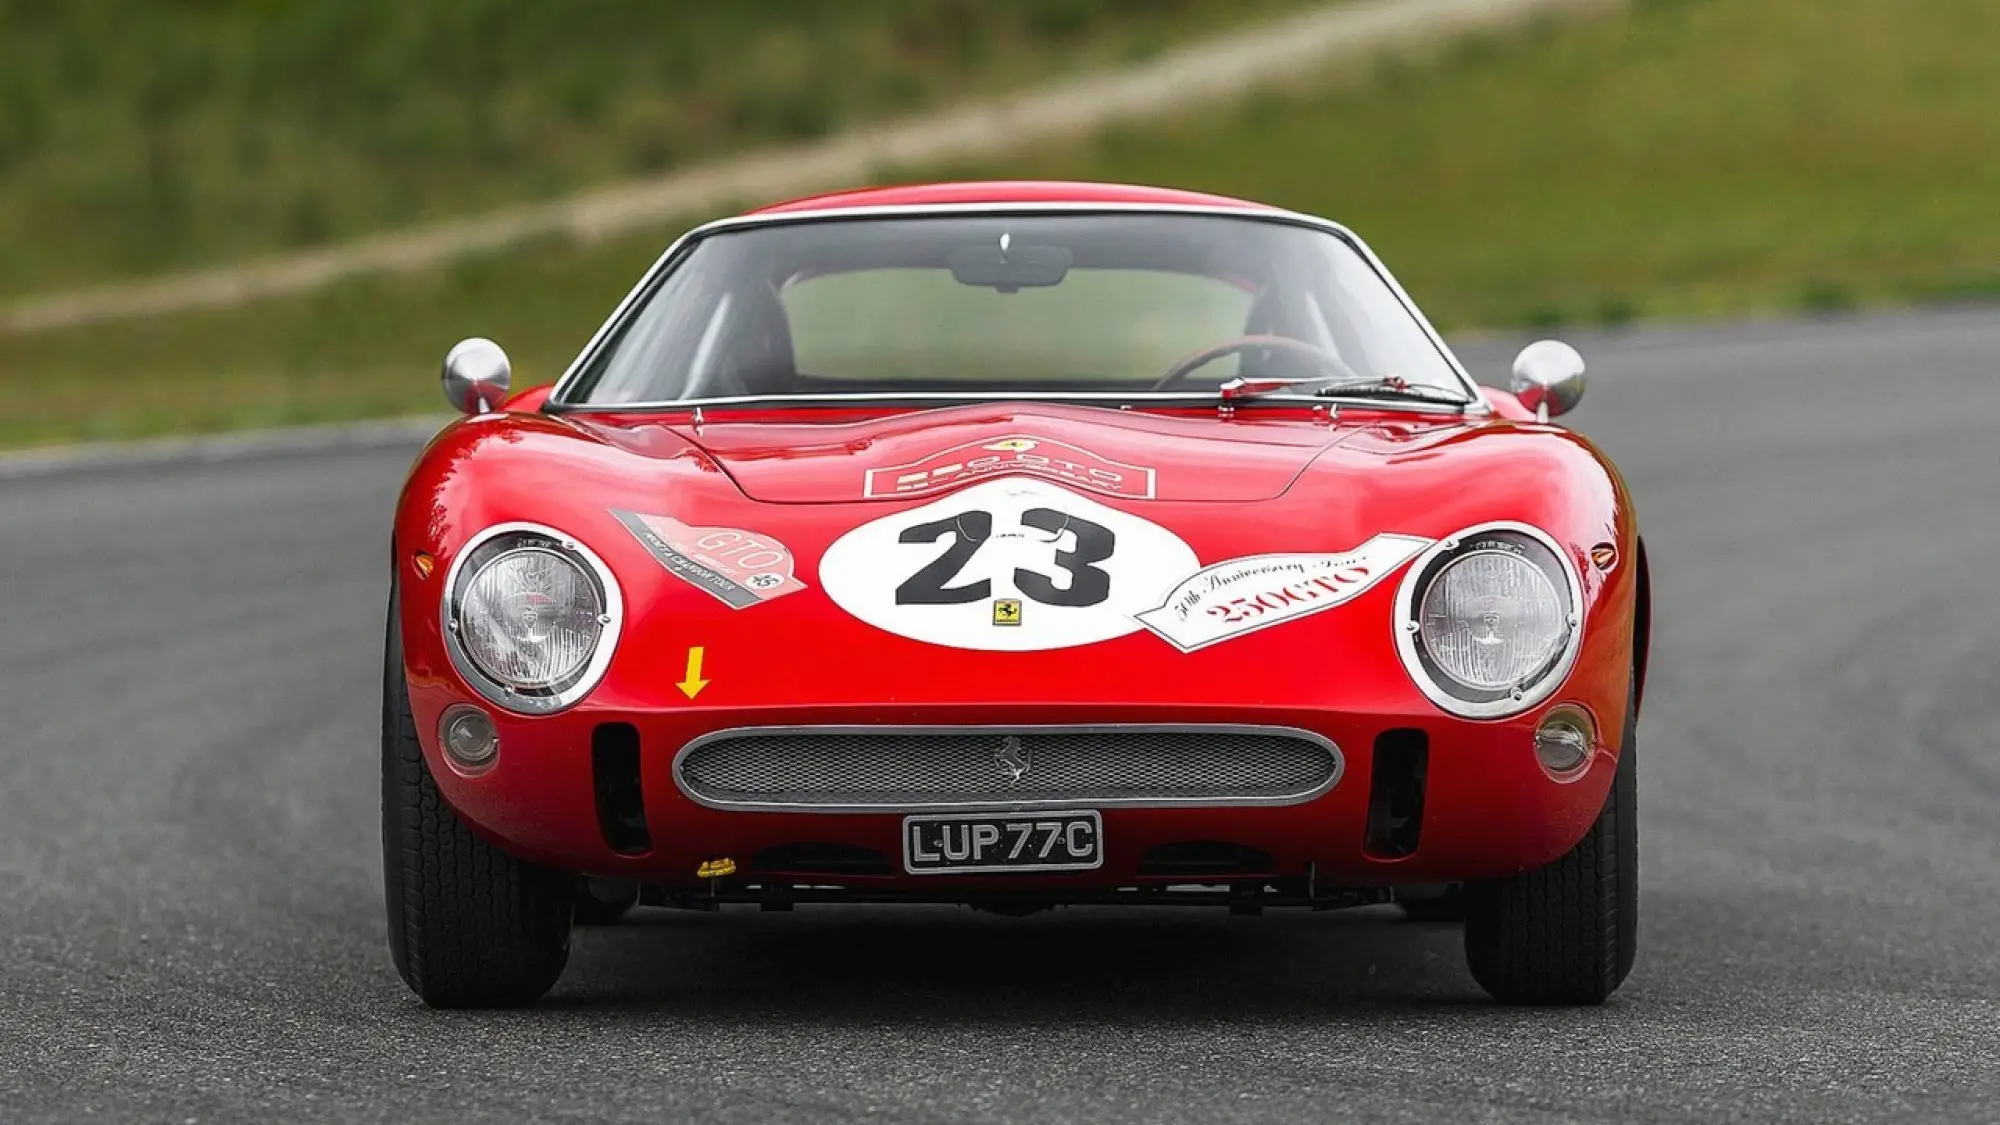 Ferrari 250 GTO vendita record 54 milioni - 6